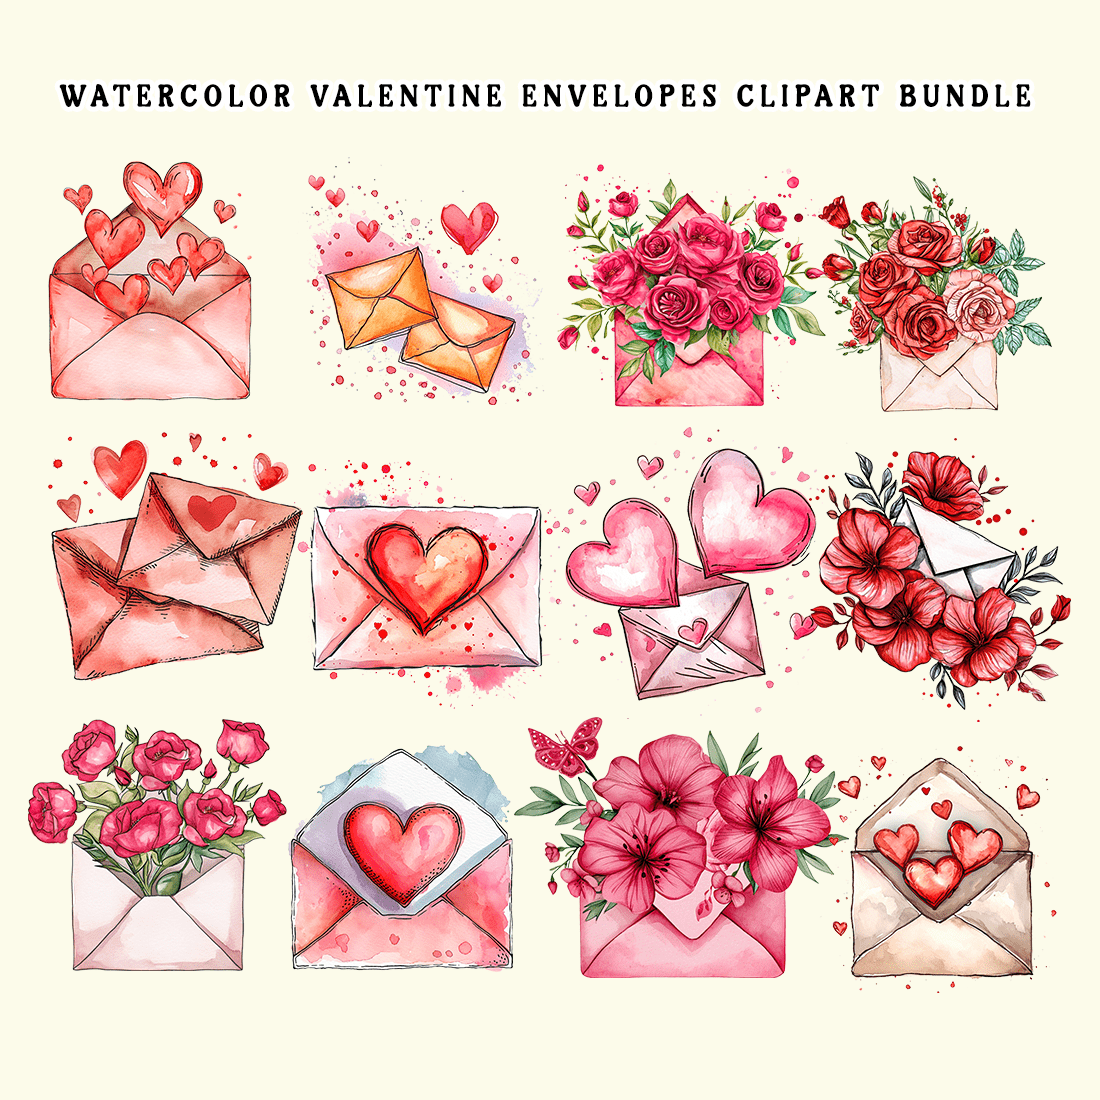 Watercolor Valentine Envelopes Clipart Bundle preview image.